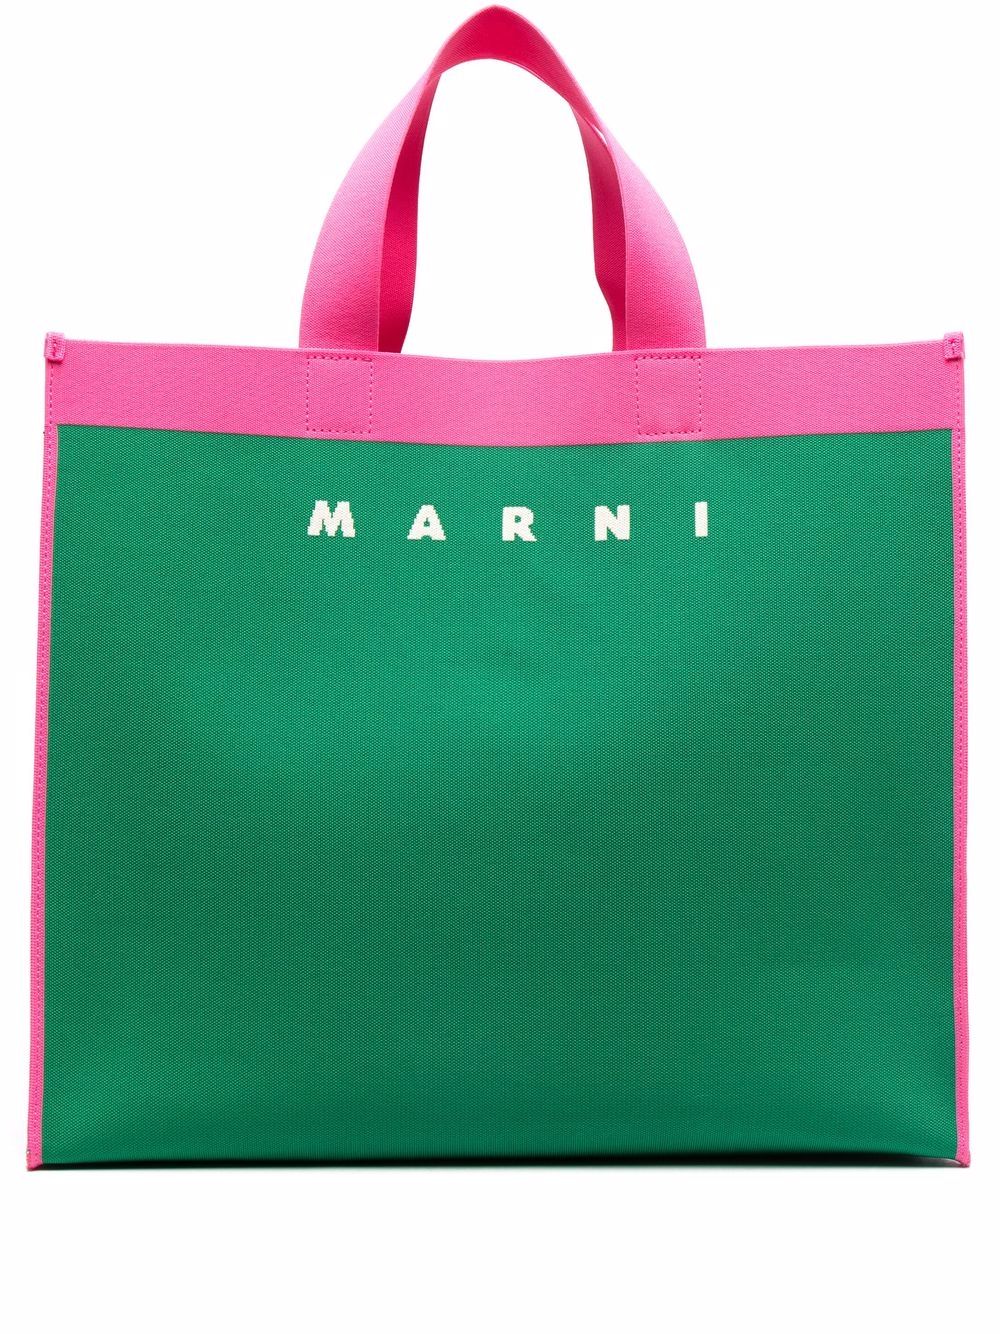 фото Marni сумка-тоут с логотипом